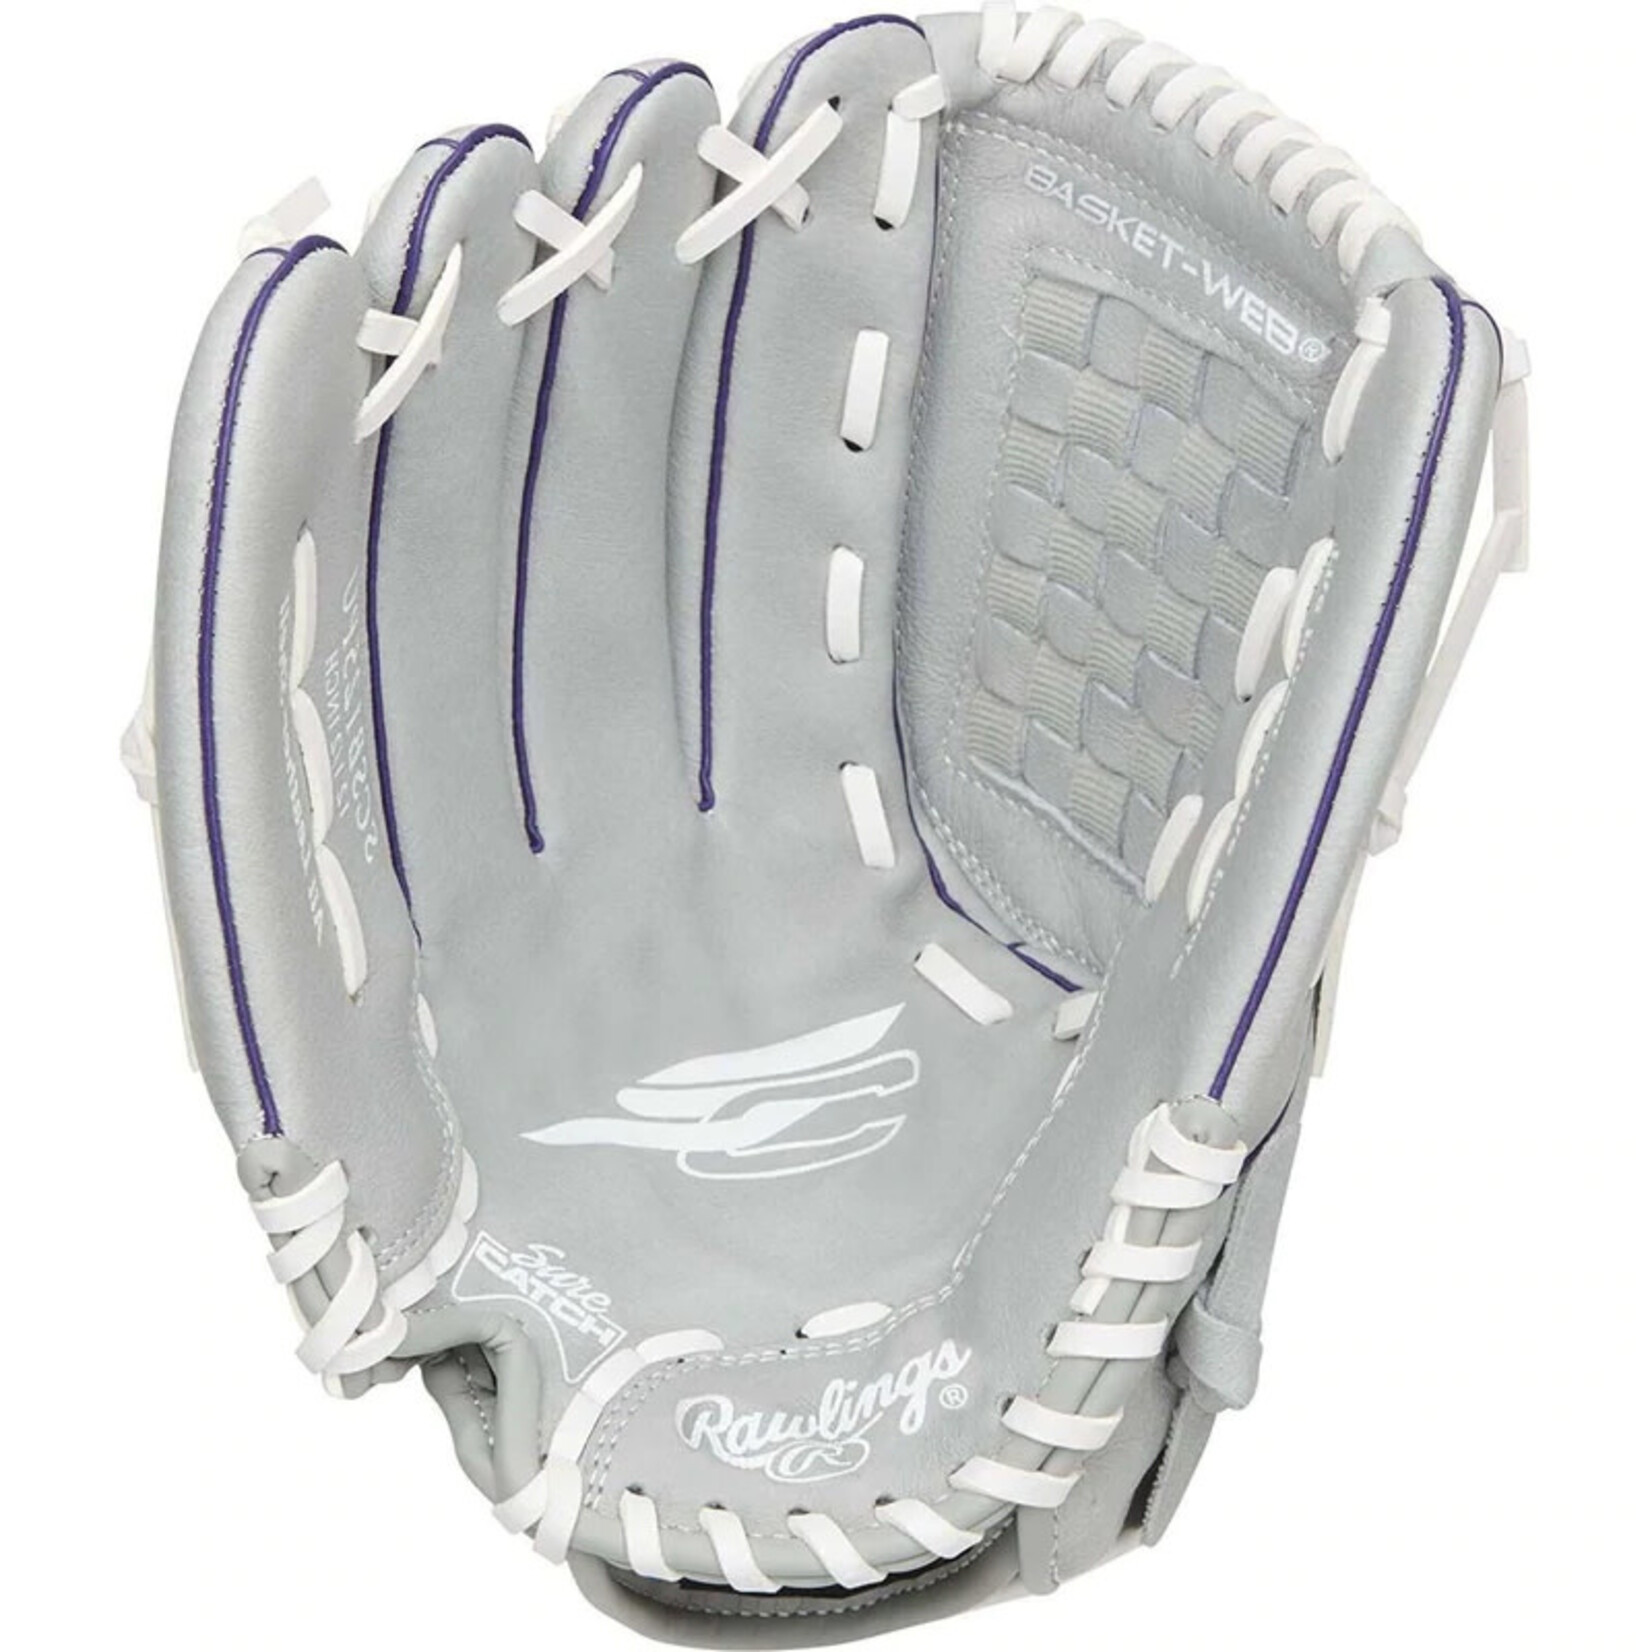 Rawlings Rawlings Baseball Glove, Sure Catch Softball, SCSB12PU, 12”, Full Right, Youth